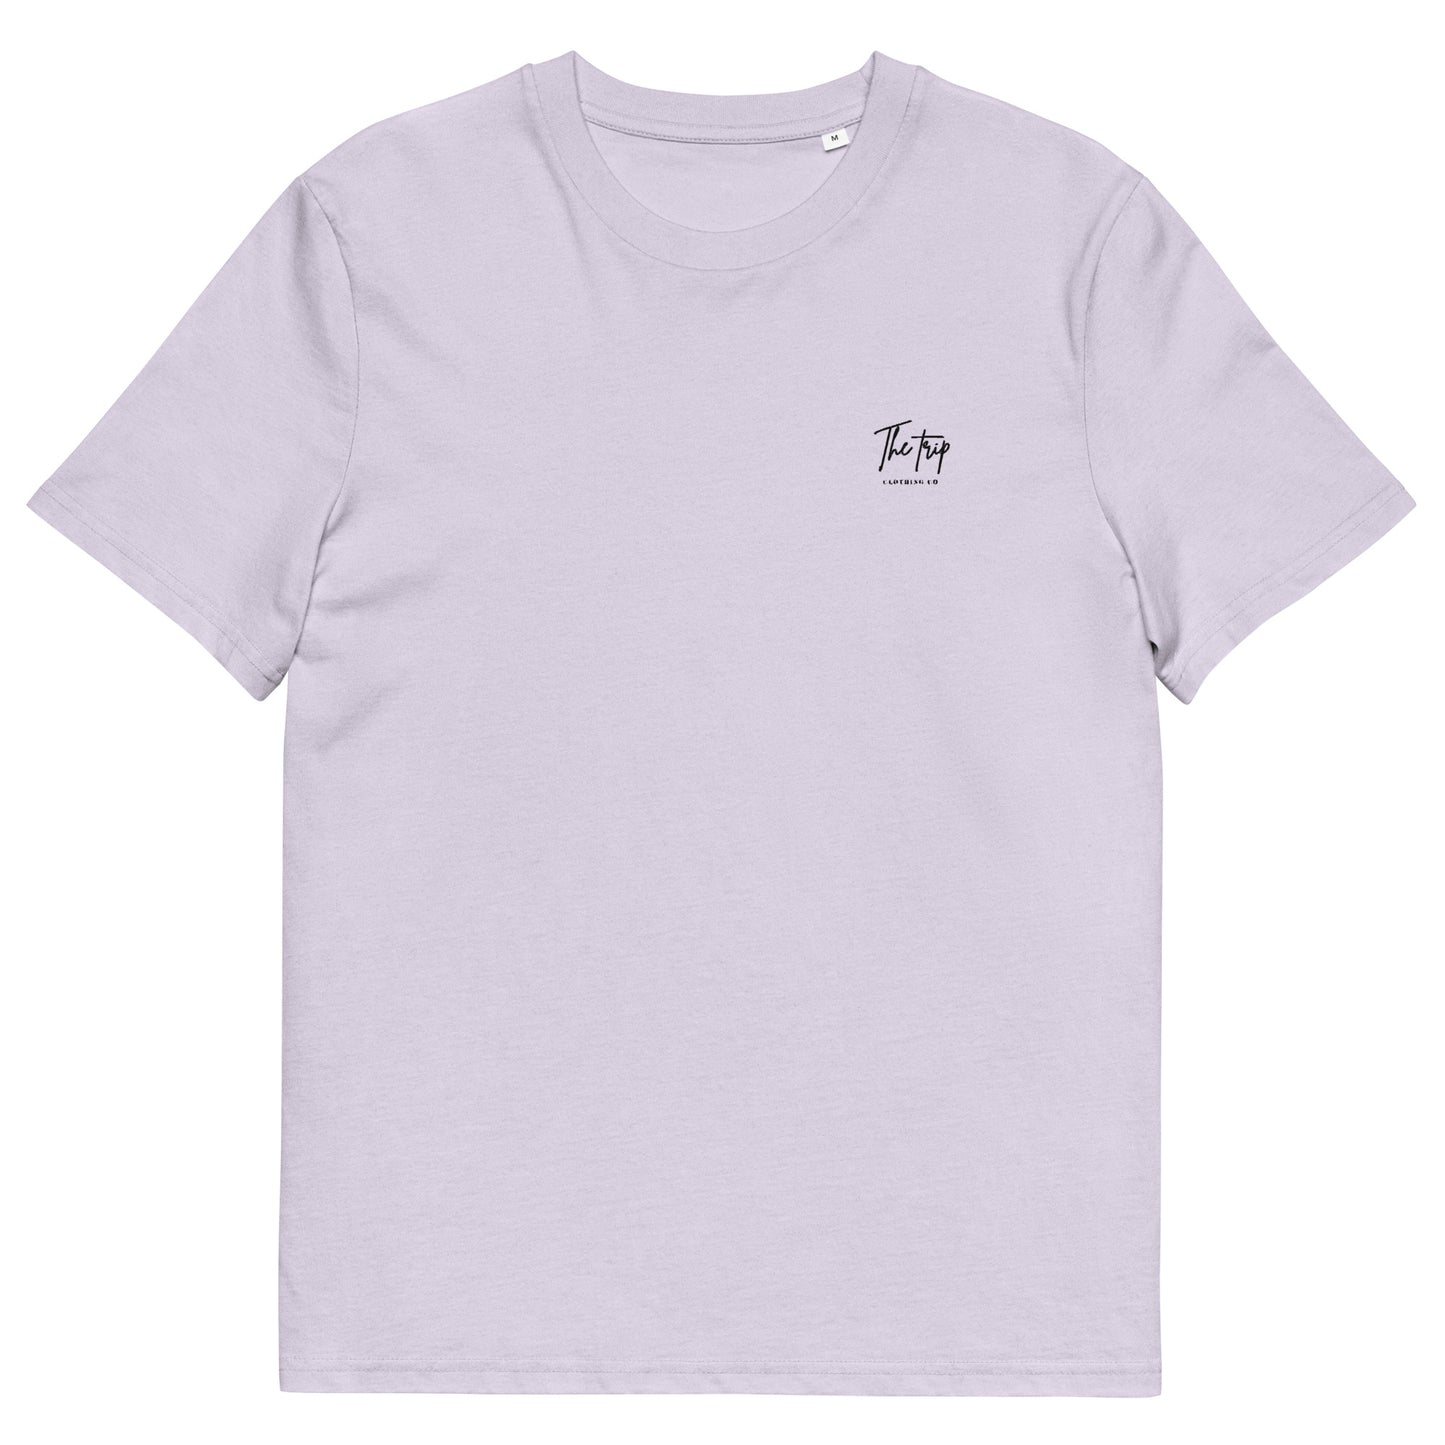 women's organic cotton t-shirt